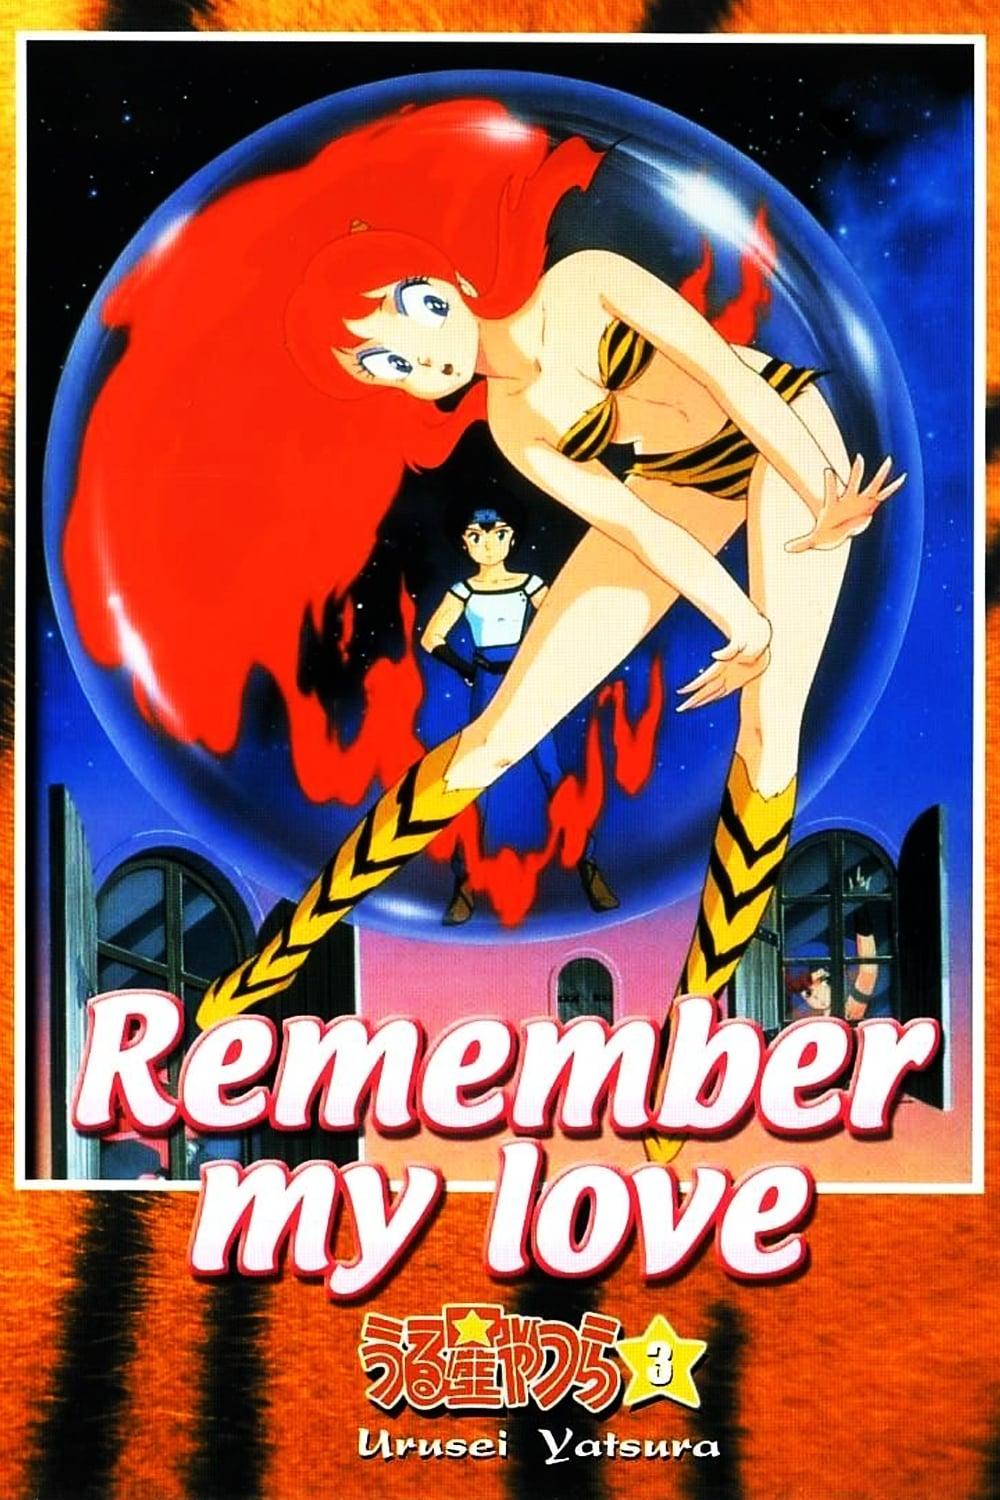 Urusei Yatsura: Remember My Love poster